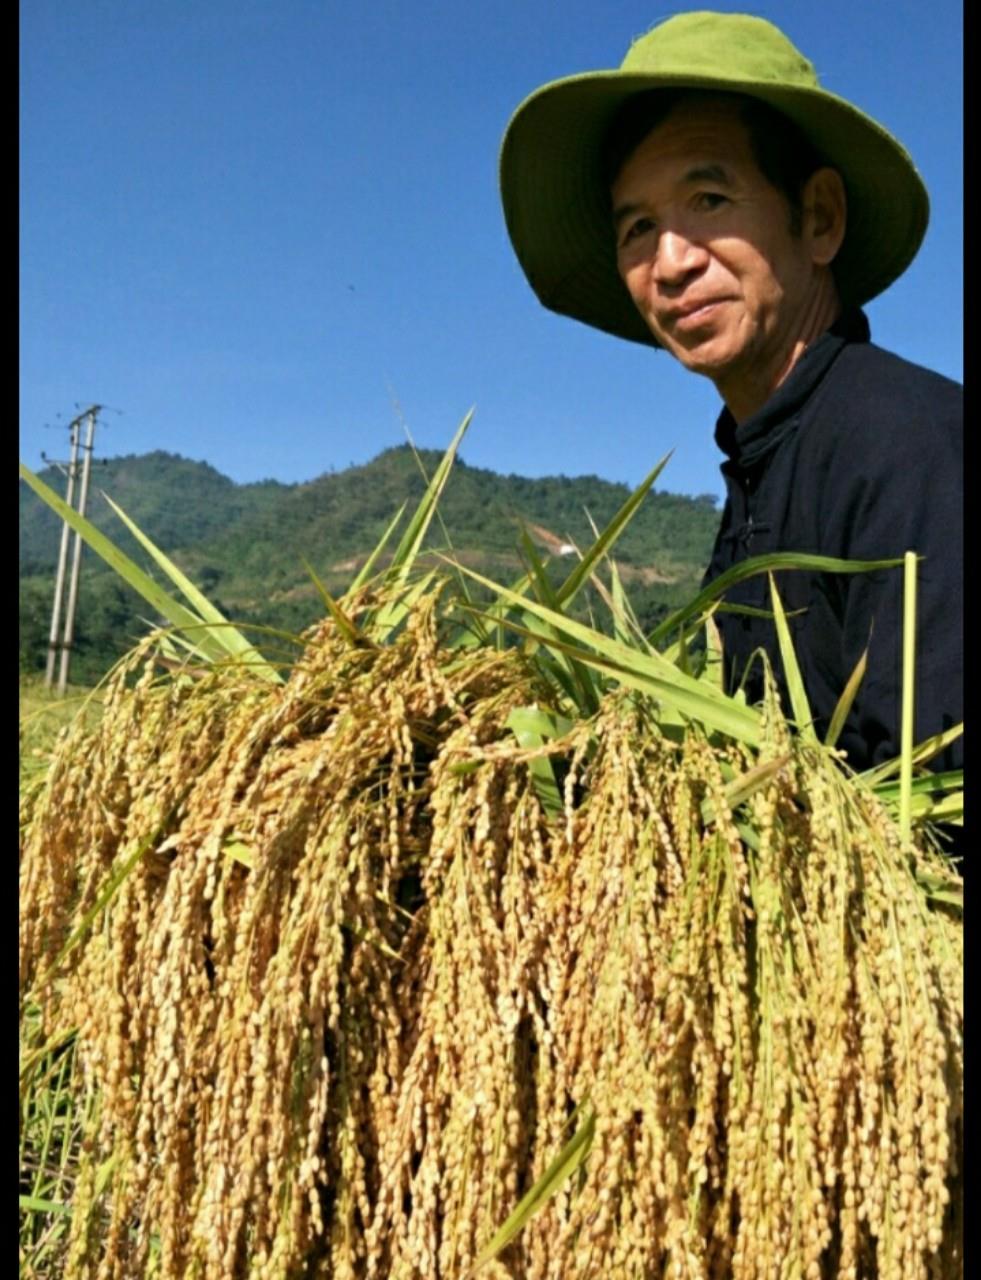 Hình ảnh: Viện Kinh tế Và Pháp luật quốc tế nghiên cứu áp dụng cải tiến khoa học công nghệ mở rộng mô hình sản xuất hàng đặc sản gạo nếp Thẳm Dương. số 1